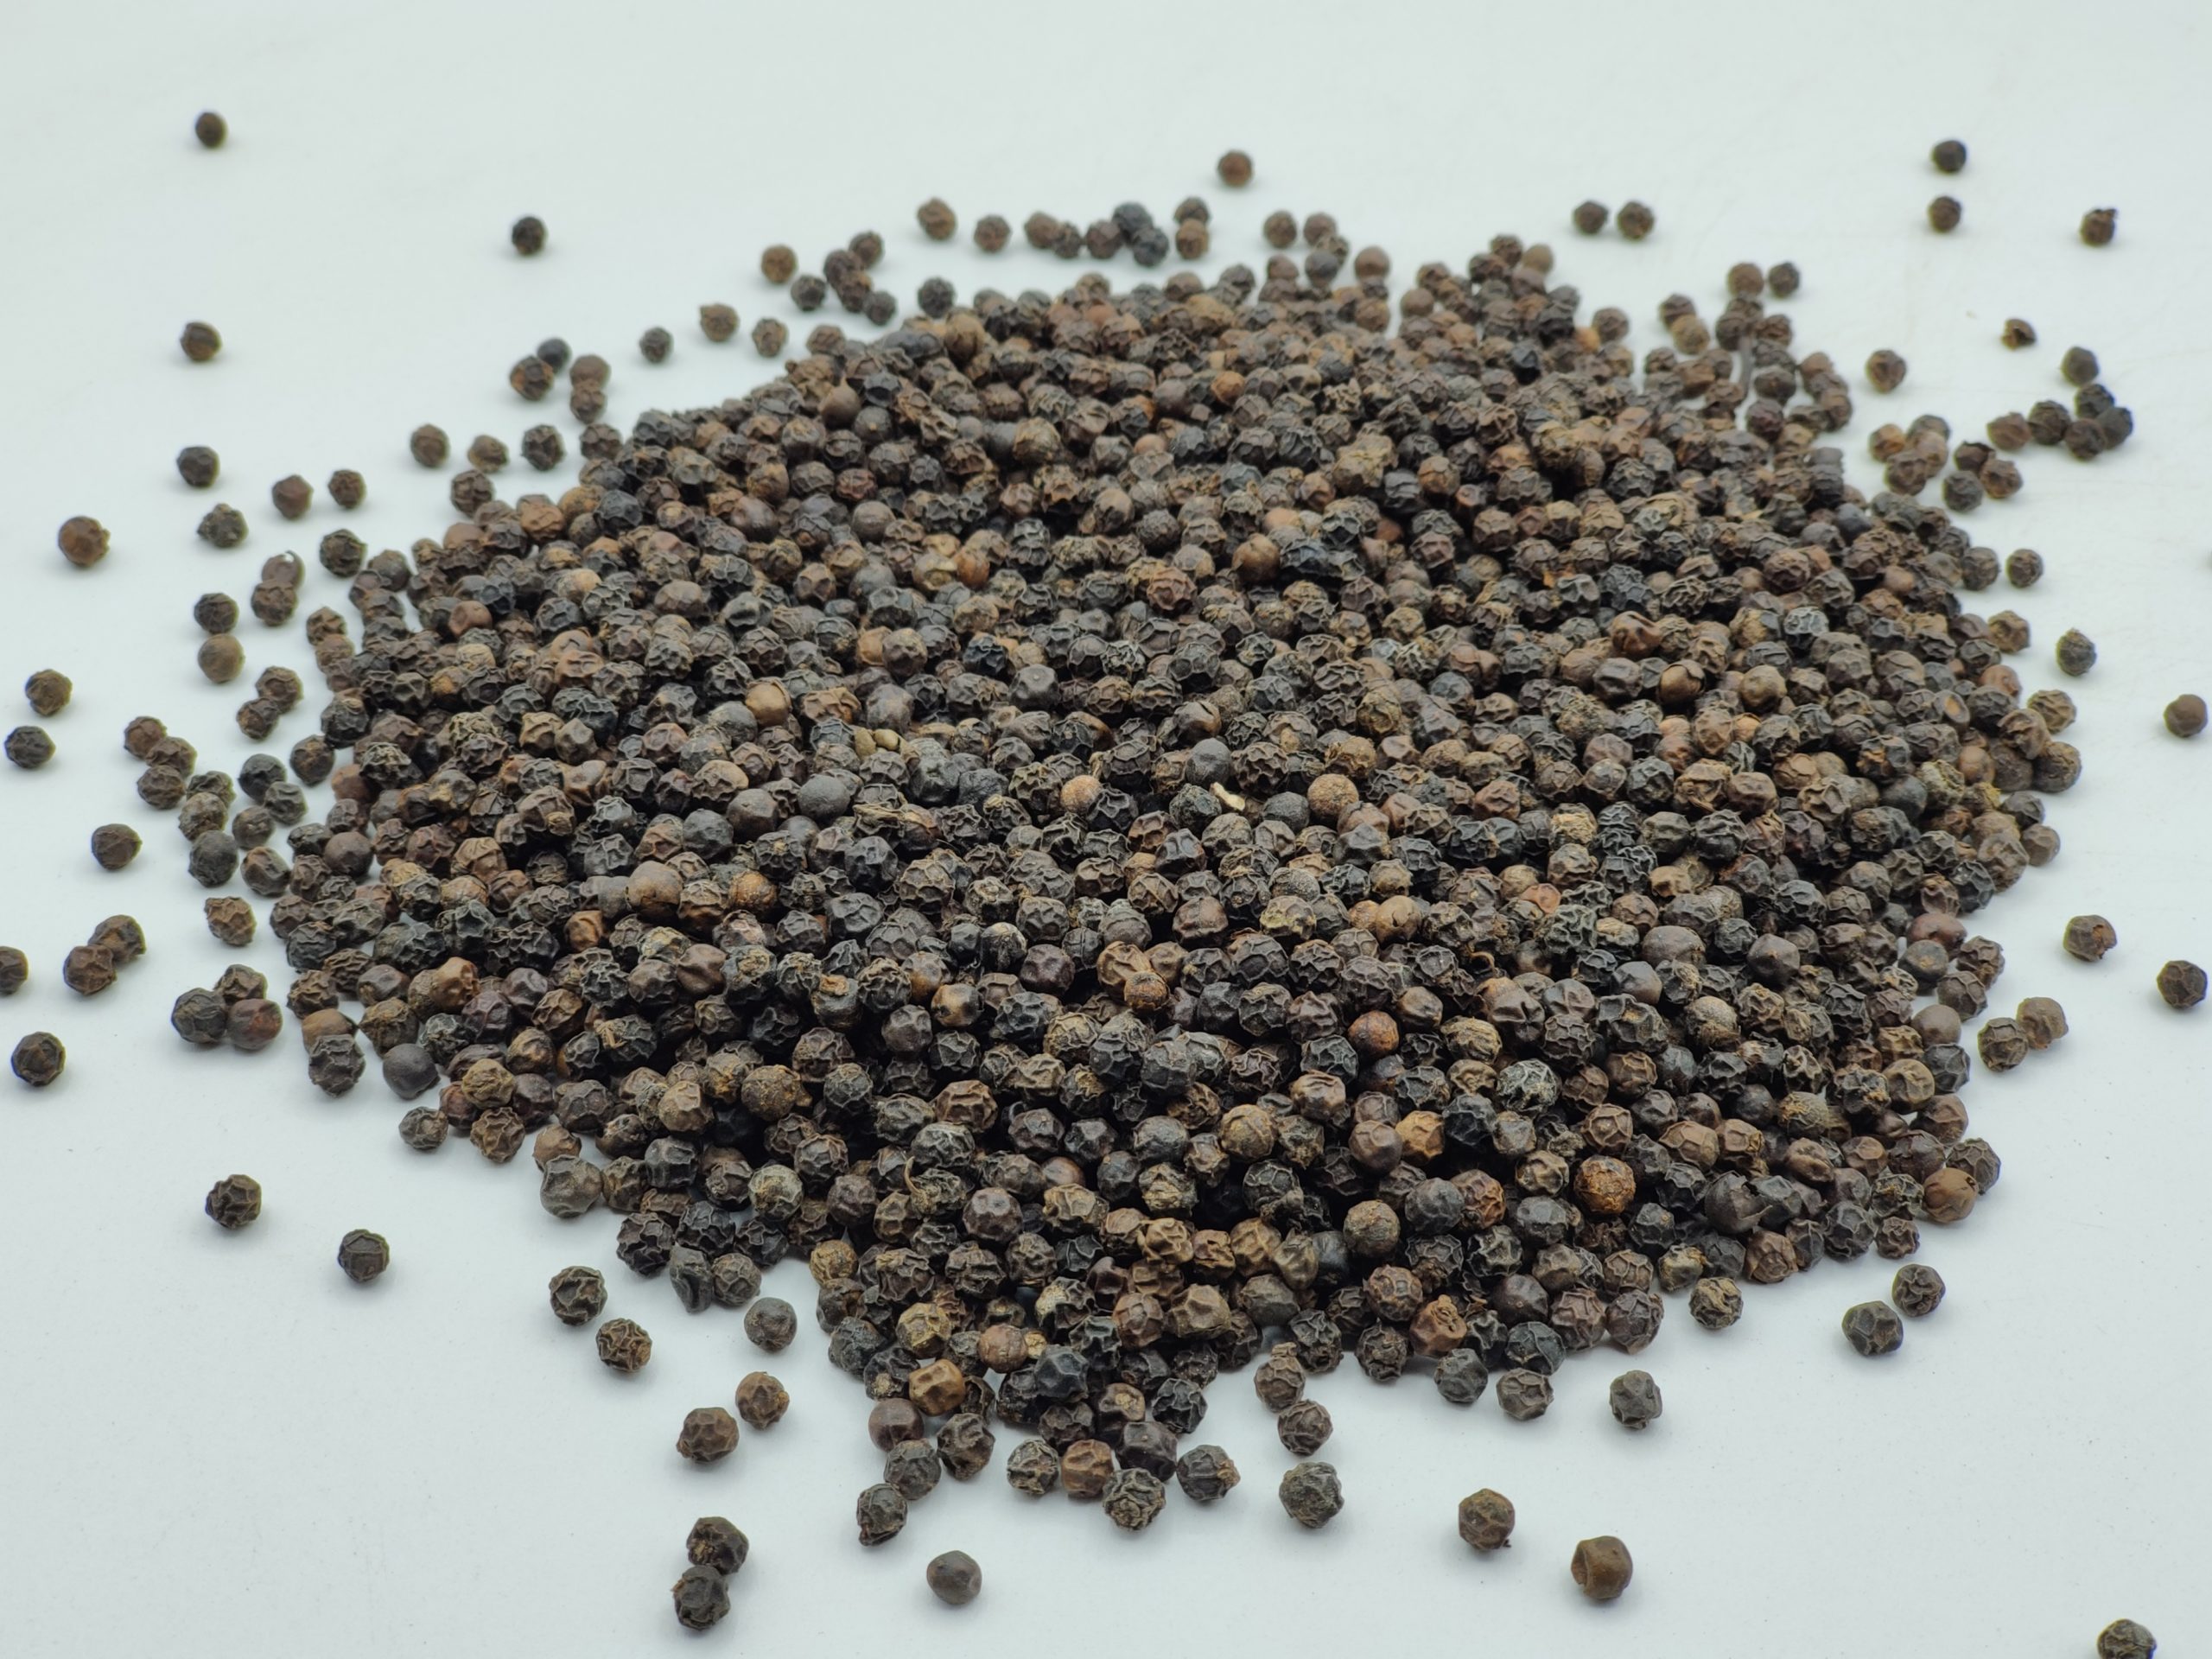 Poivre Noir Grain BIO (1 Kg)